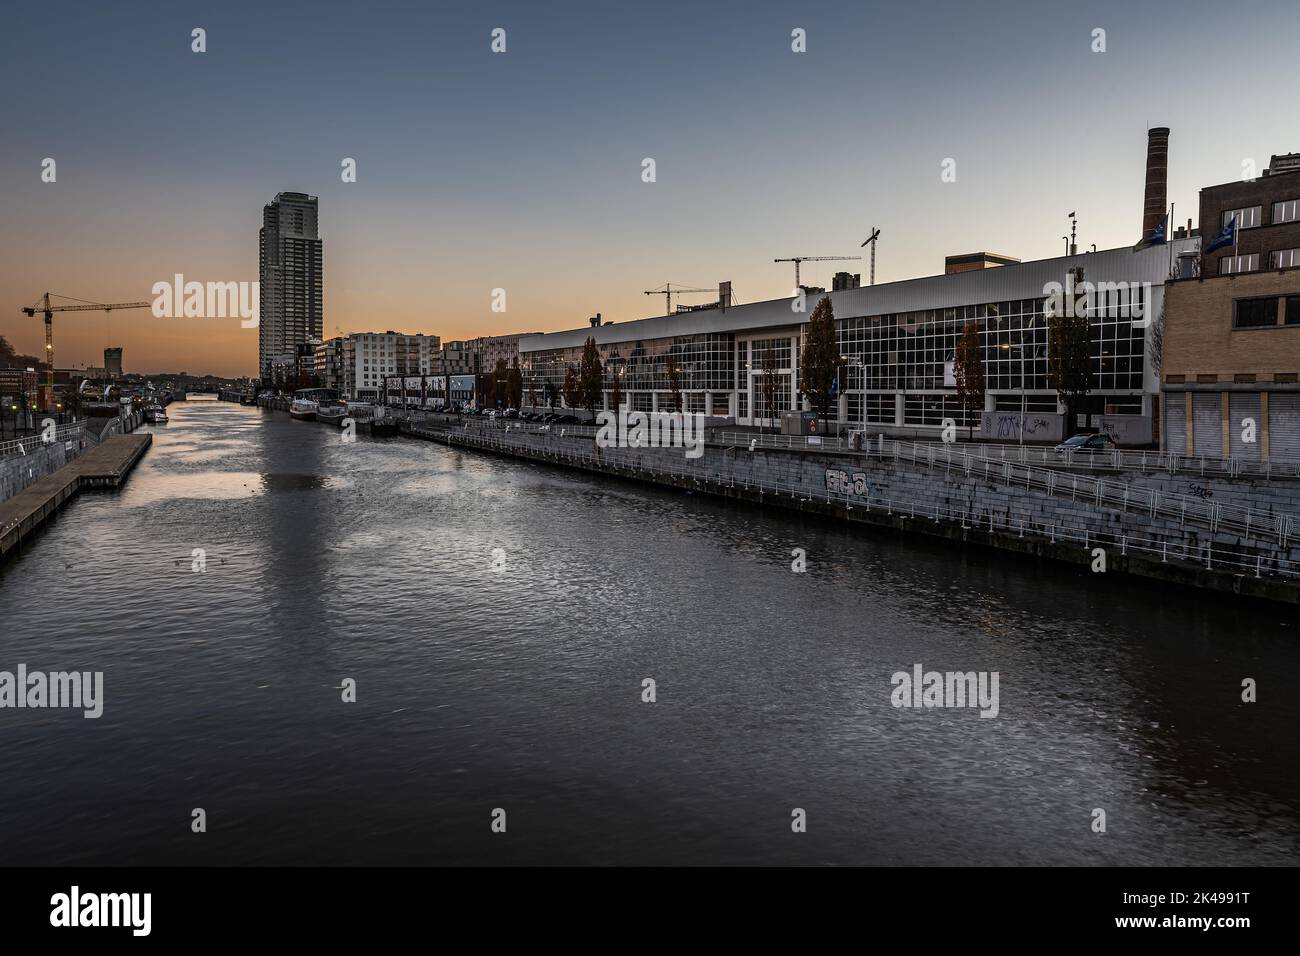 Molenbeek, Bruxelles, Belgique - 11 18 2020 - vue sur la ville au bord du canal au coucher du soleil Banque D'Images